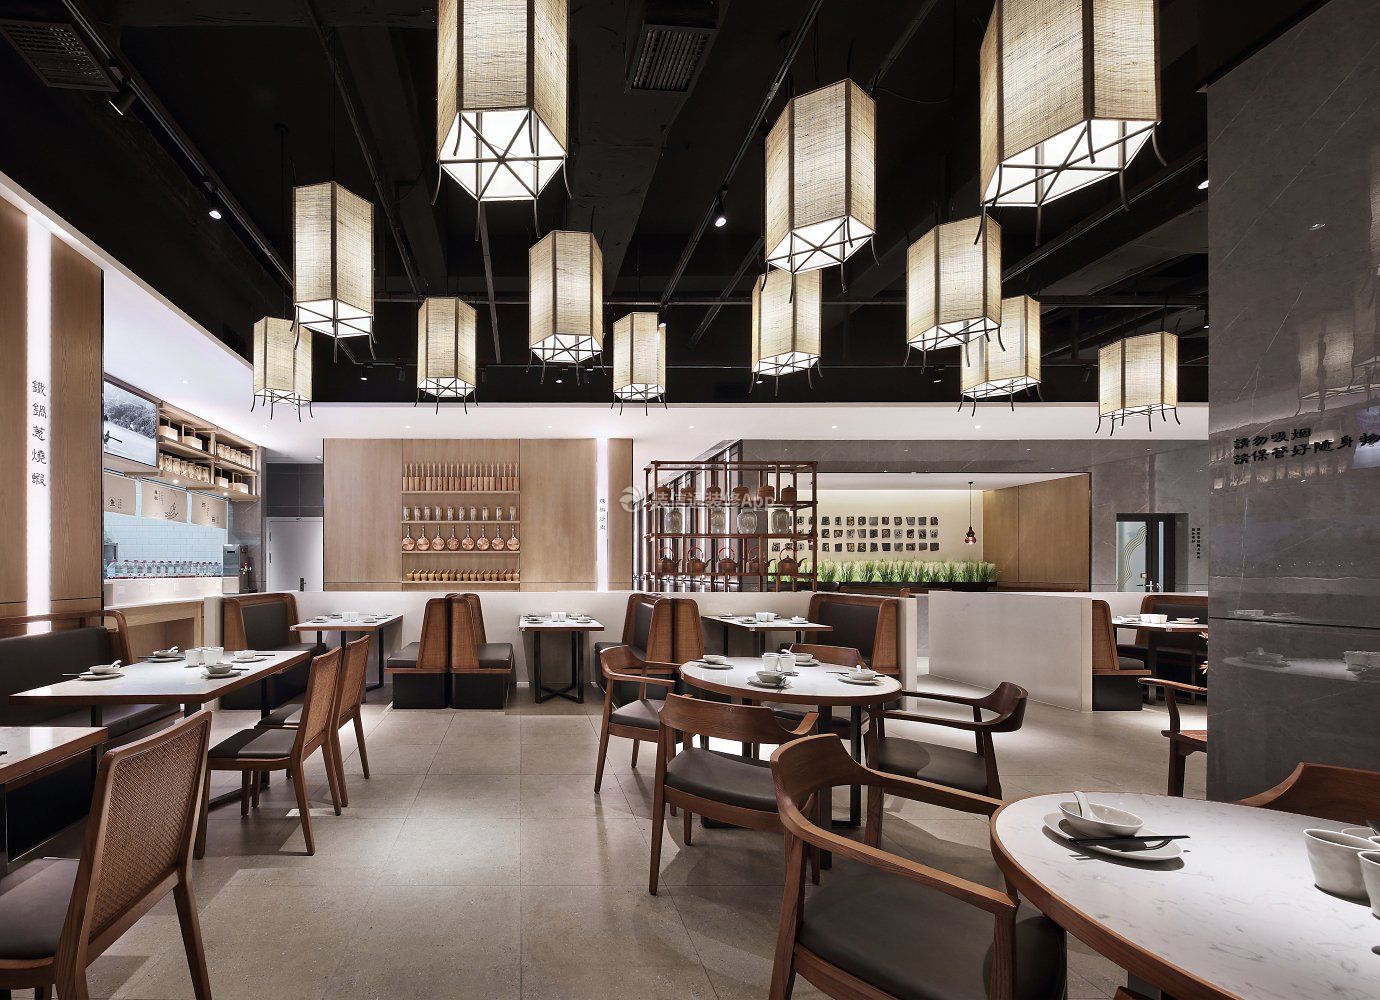 上海饭店餐厅吊灯装修设计图欣赏